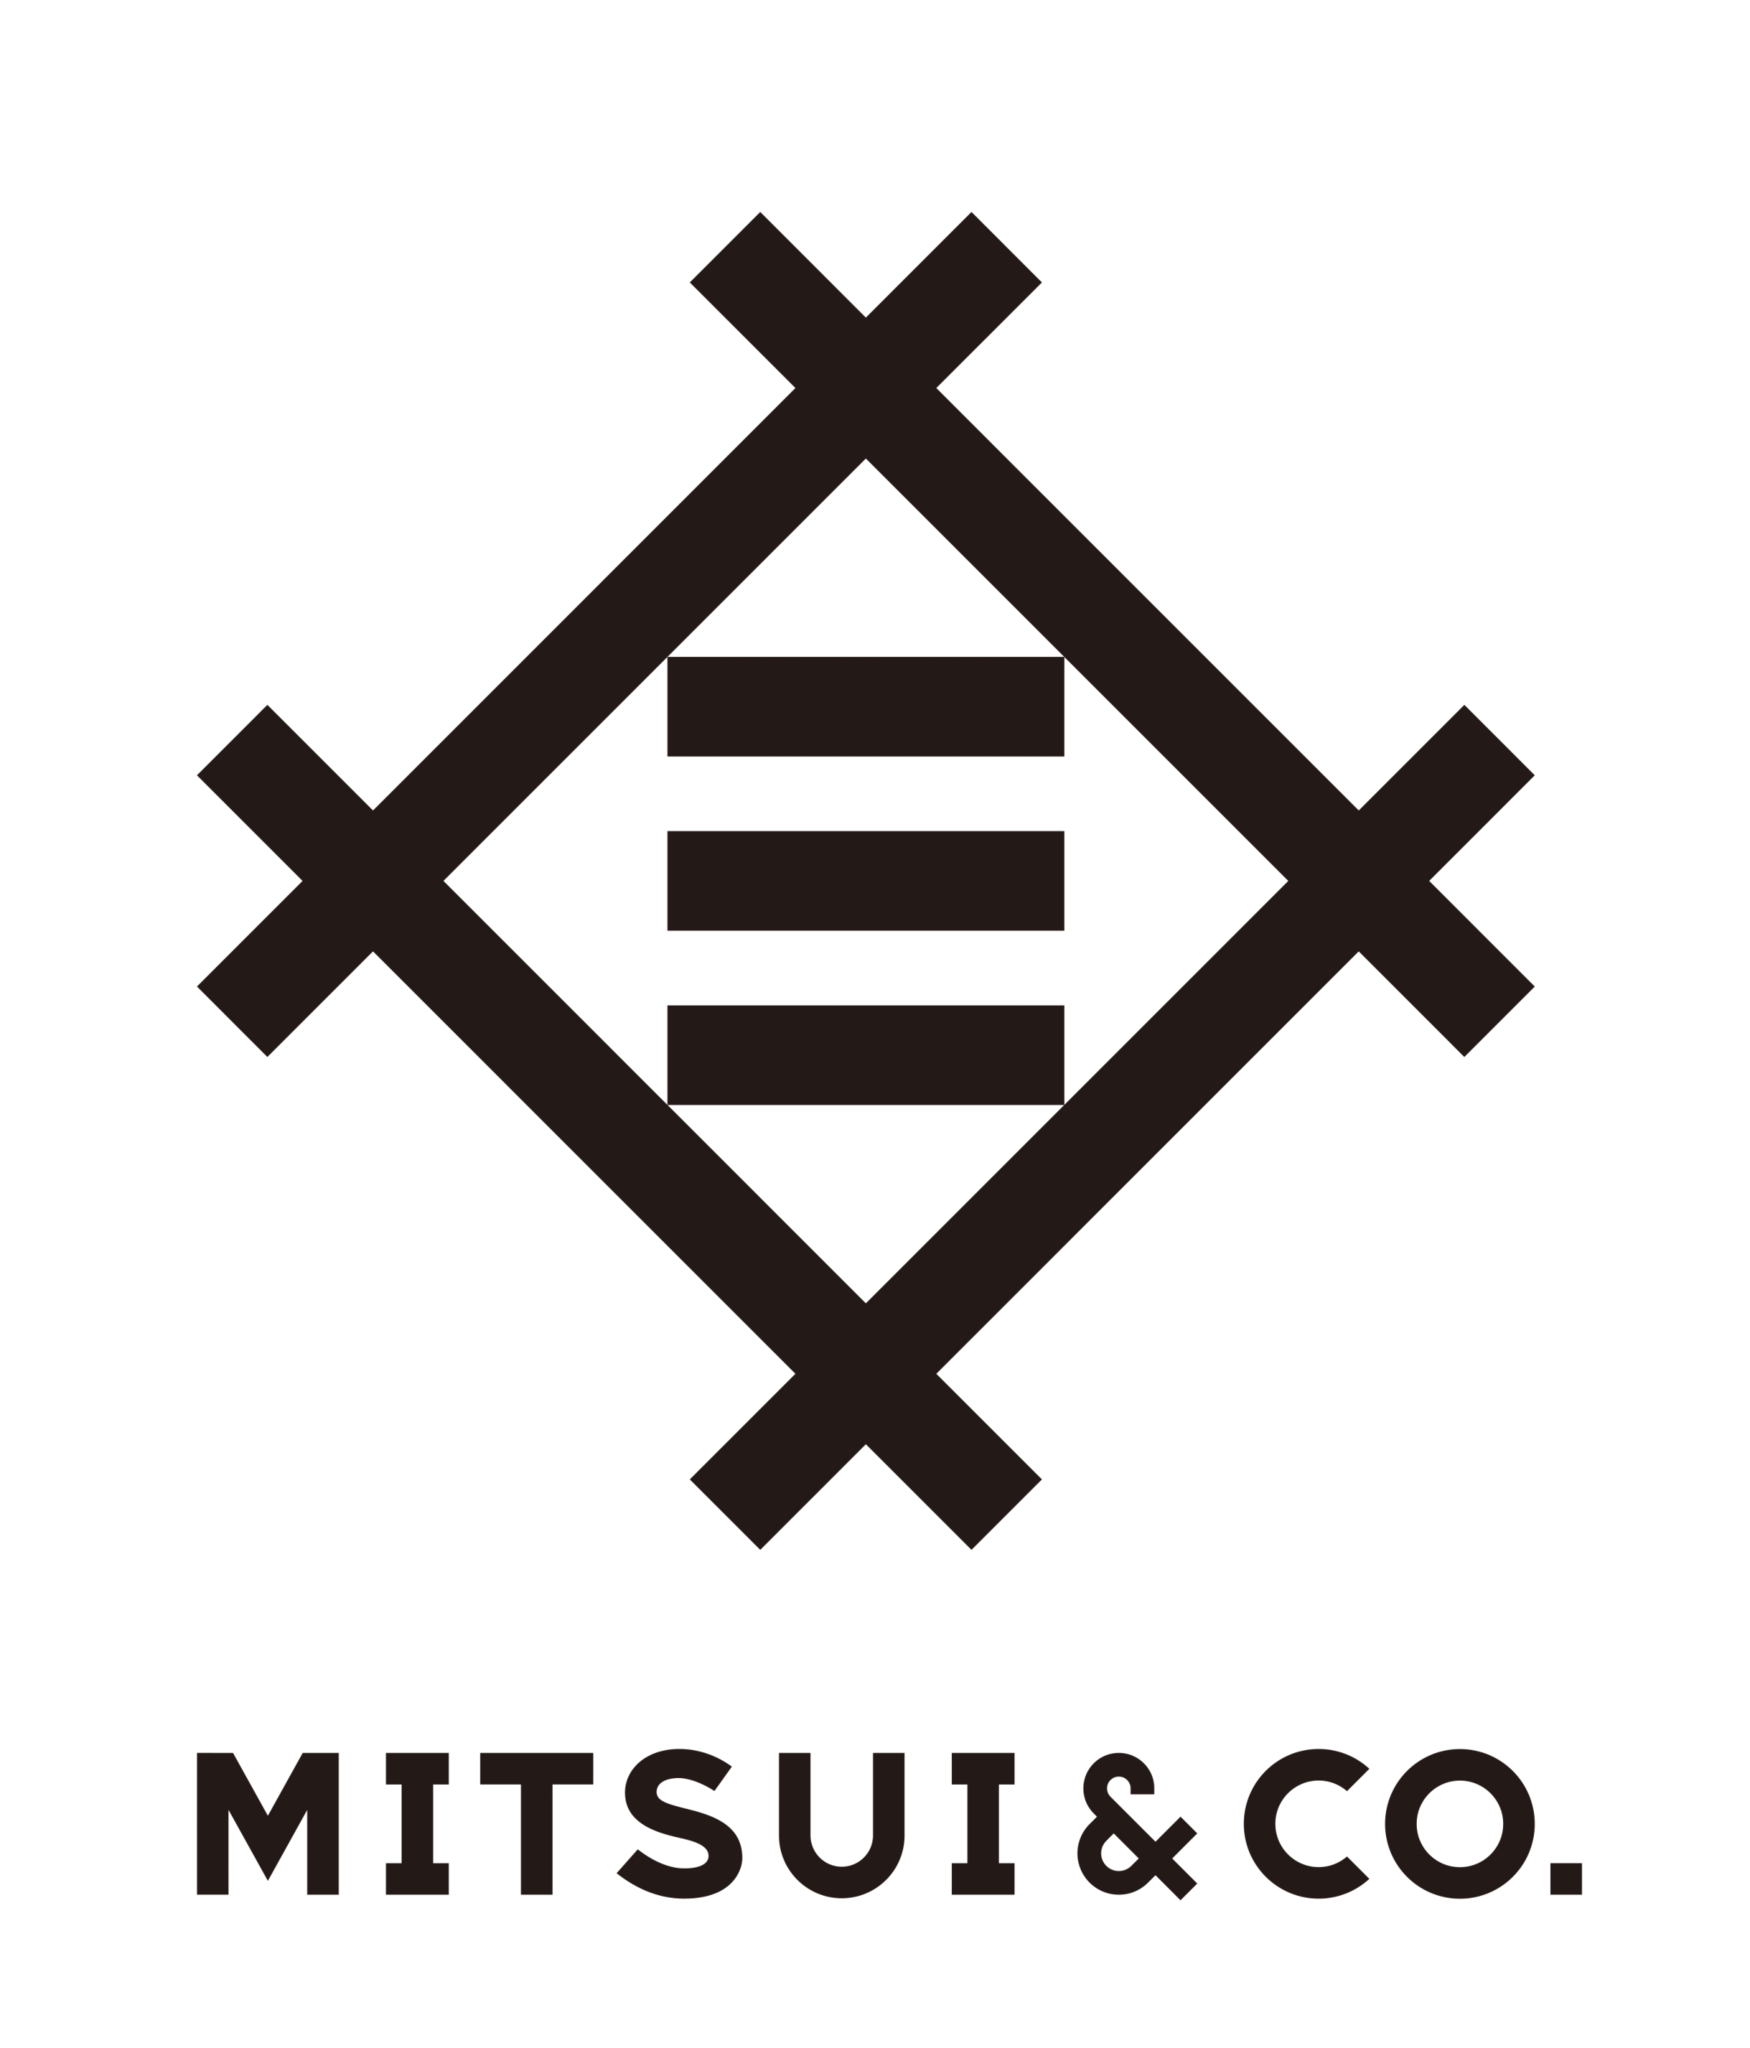 Mitsui & Co.